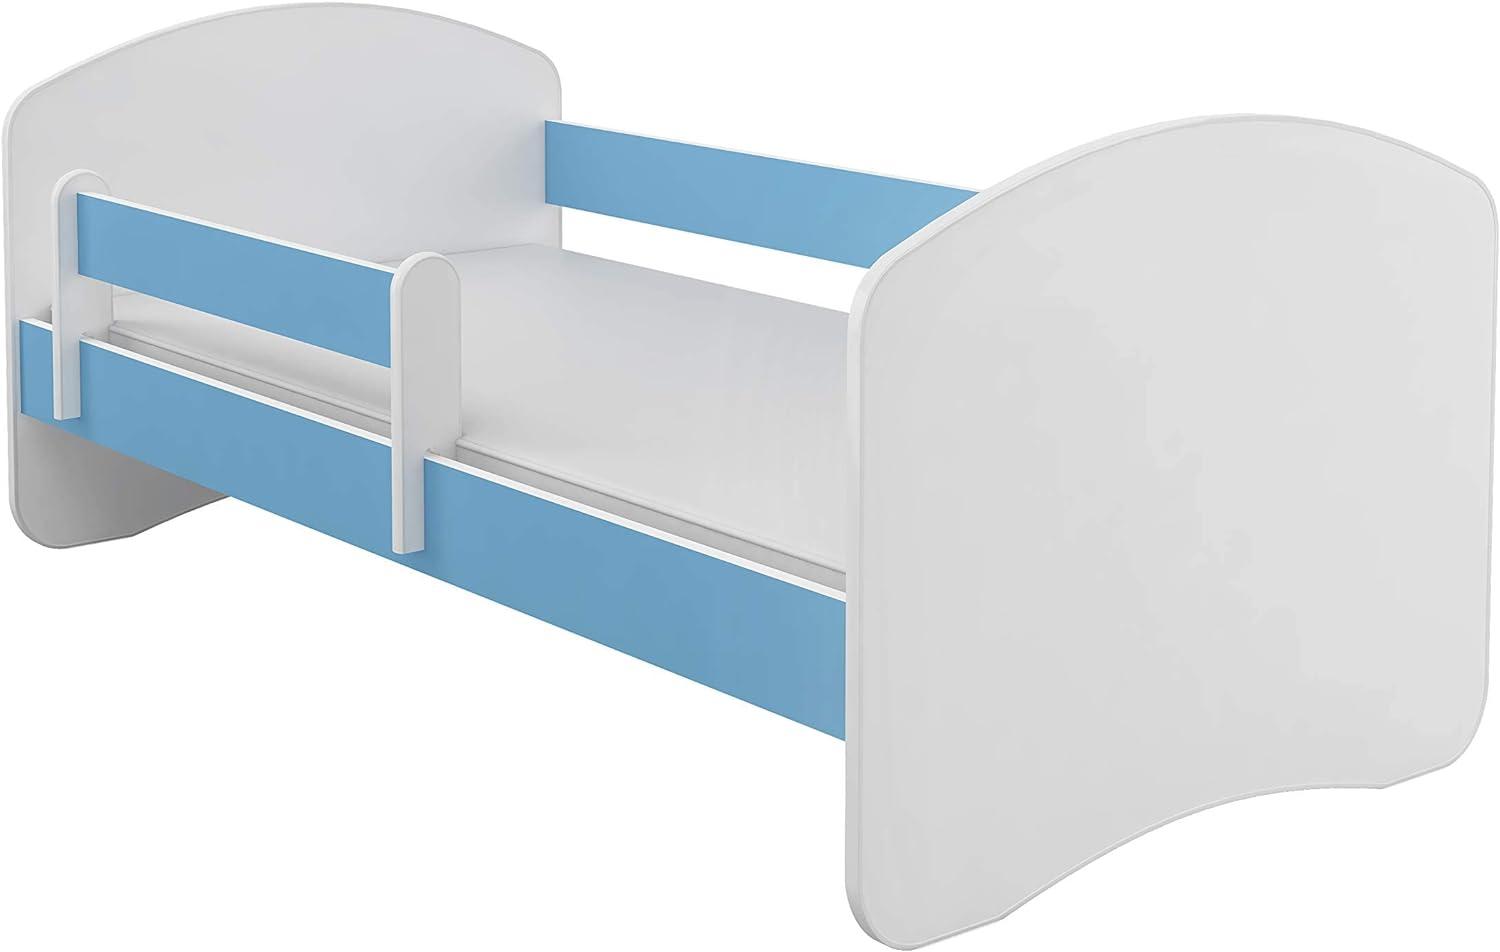 Kinderbett Jugendbett mit einer Schublade und Matratze Weiß ACMA II (180x80 cm, Blau) Bild 1